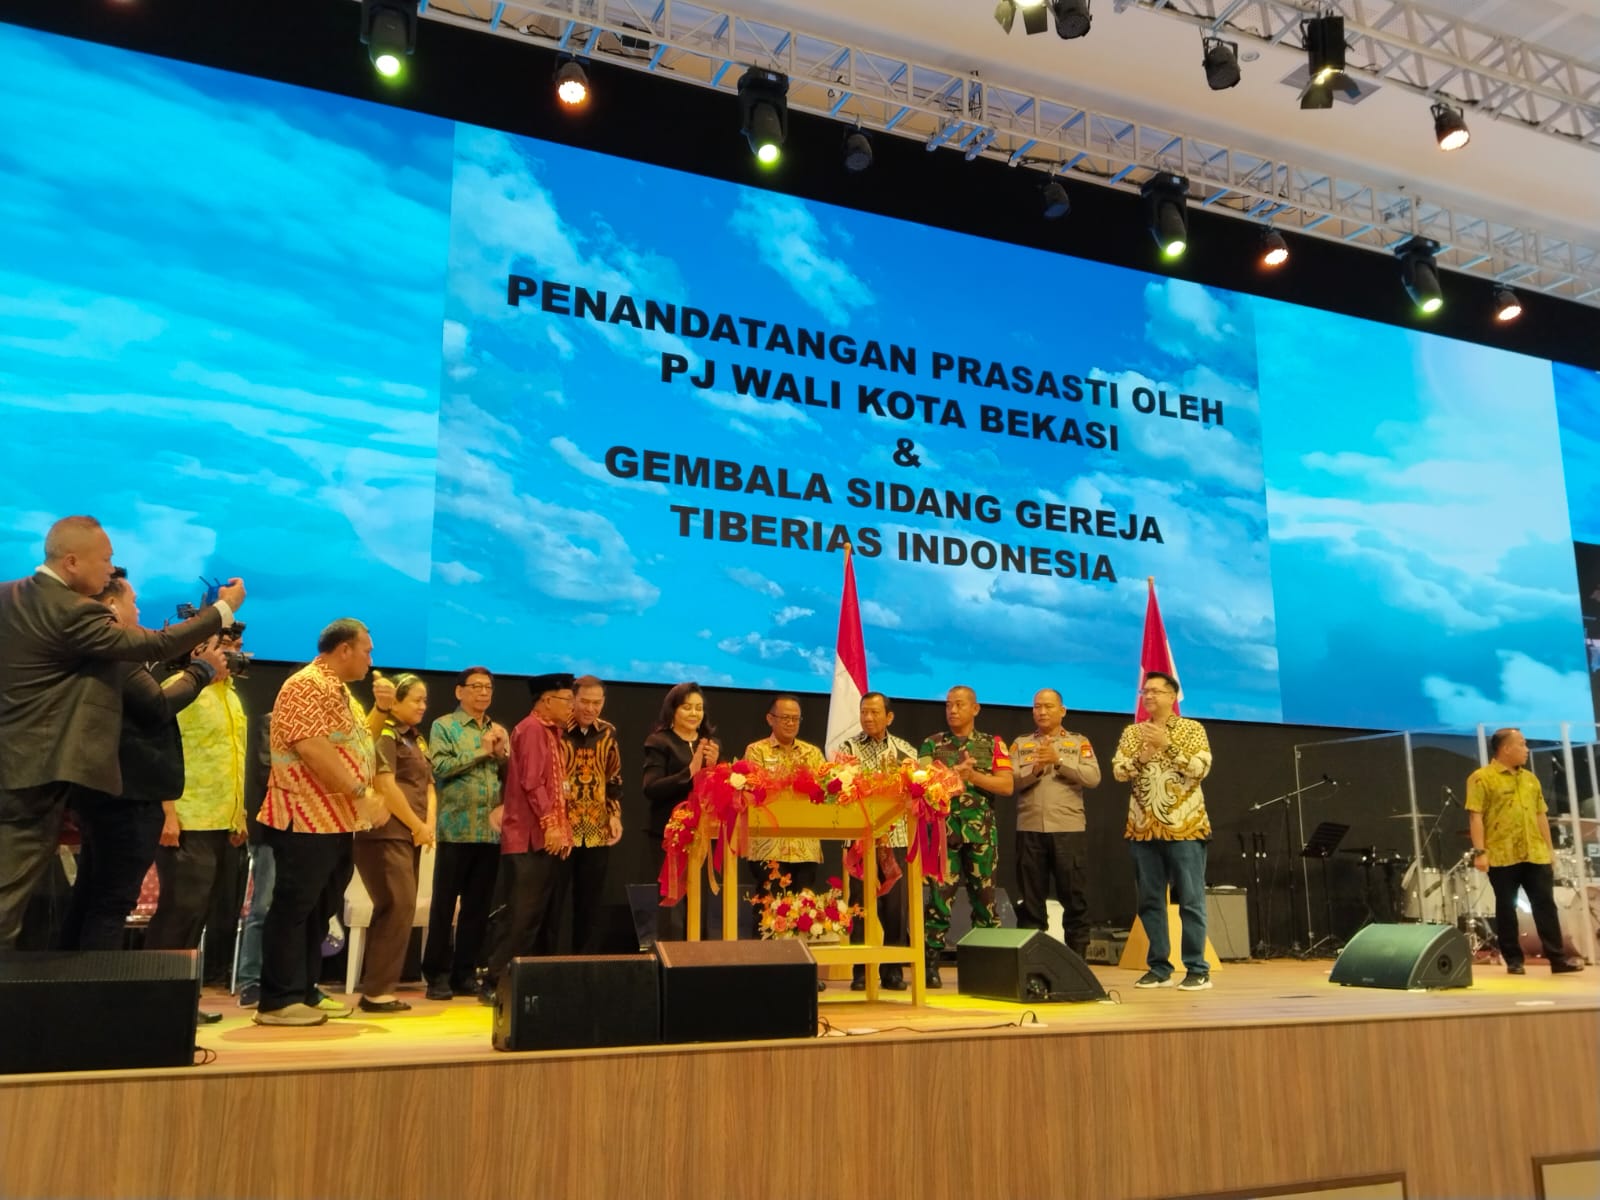 Peresmian Gedung Tiberias Bekasi Town square, Kota Bekasi Sebagai Kota Toleran Antar Umat Beragama